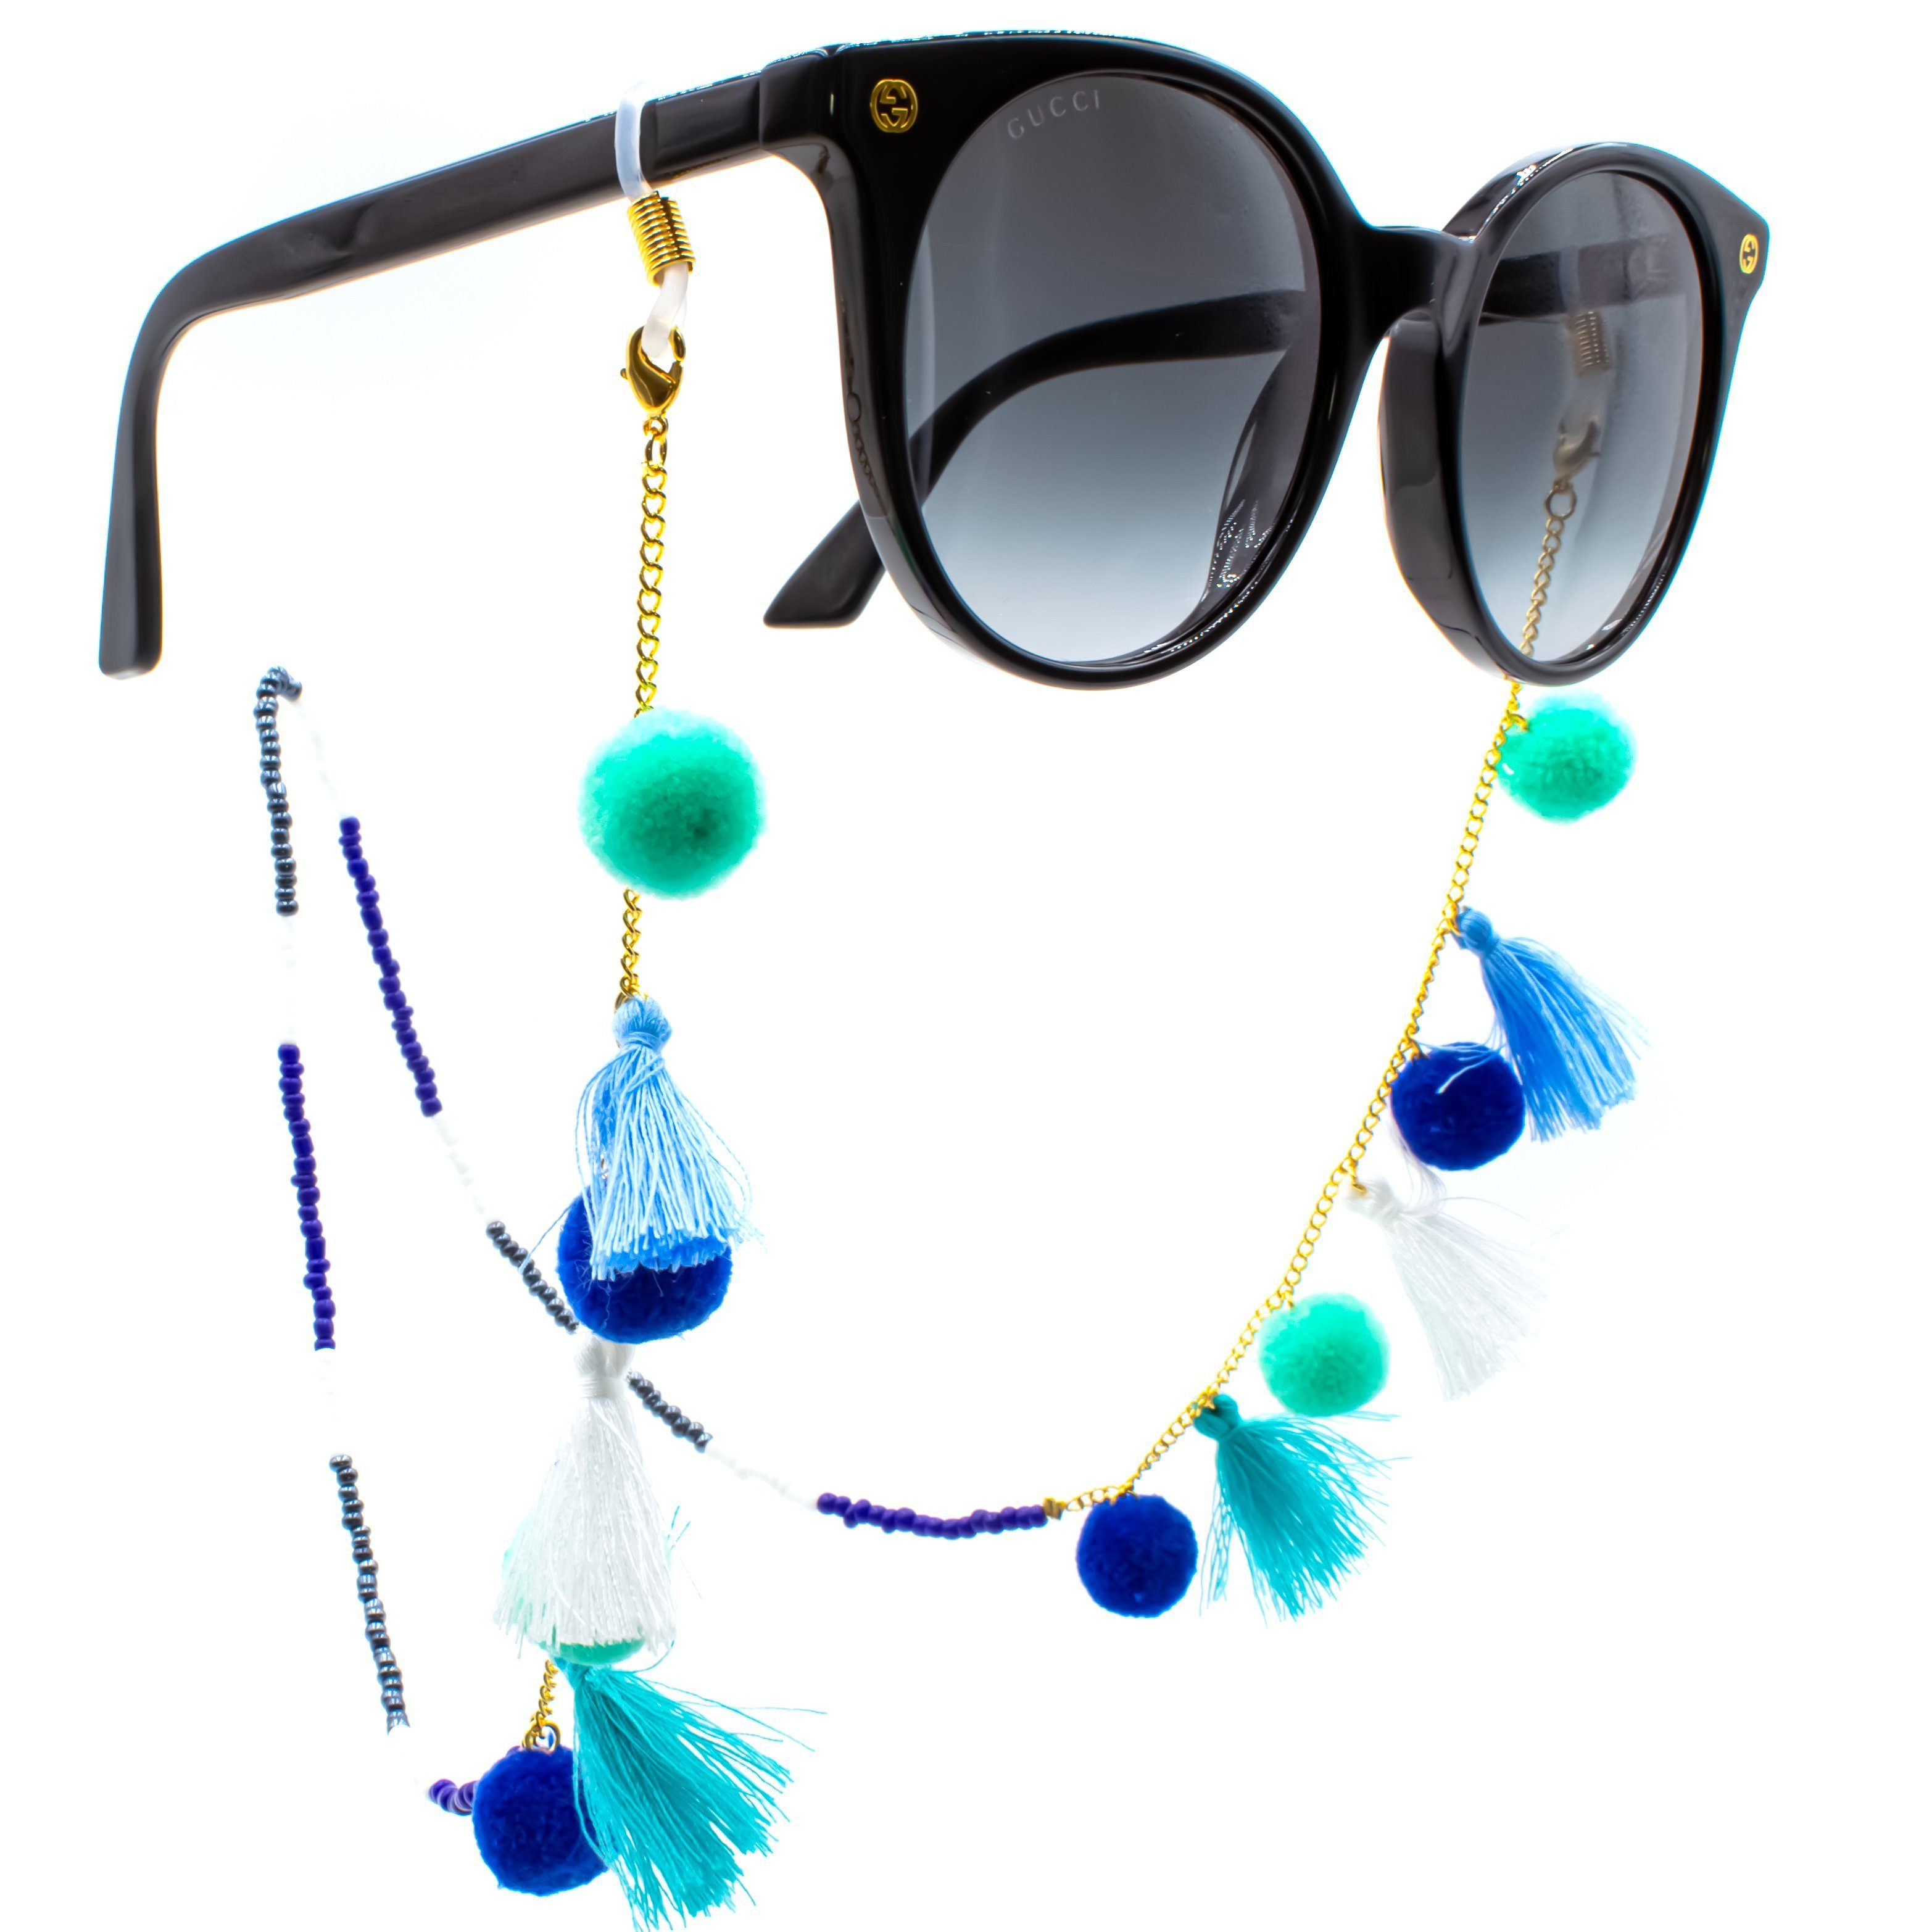 GERNEO Brillenband GERNEO® - Korfu - Premium Brillenband & Brillenkordel Unisex, Versiegelung aus 18 Karat Gold oder 925er Silber, Fähnchen Blau Weiß